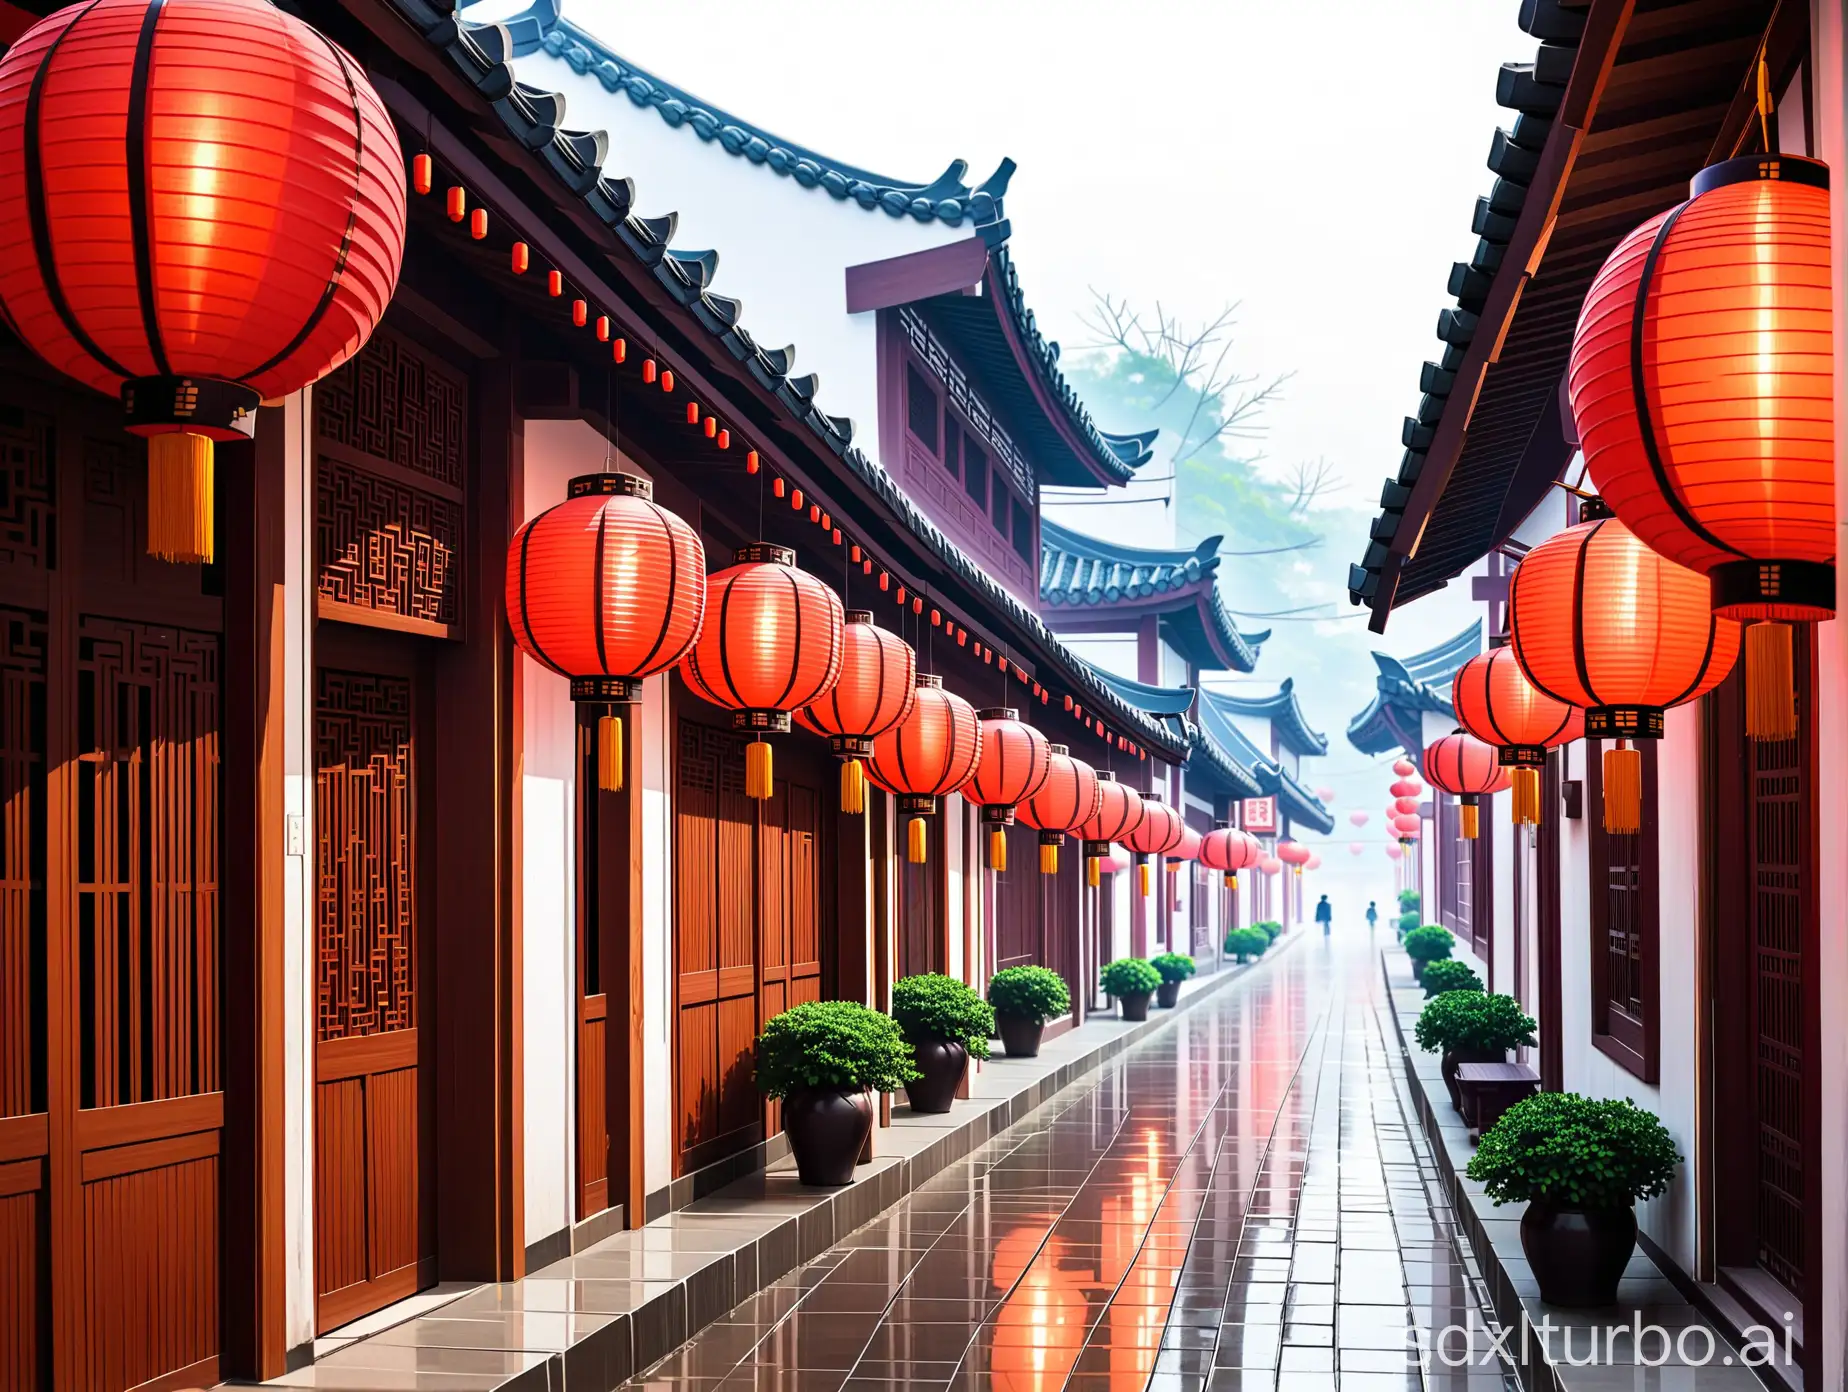 安徽小镇的古朴街道，晨雾缭绕，街道两旁挂着红灯笼，营造出一种中国风的温馨和传统氛围。